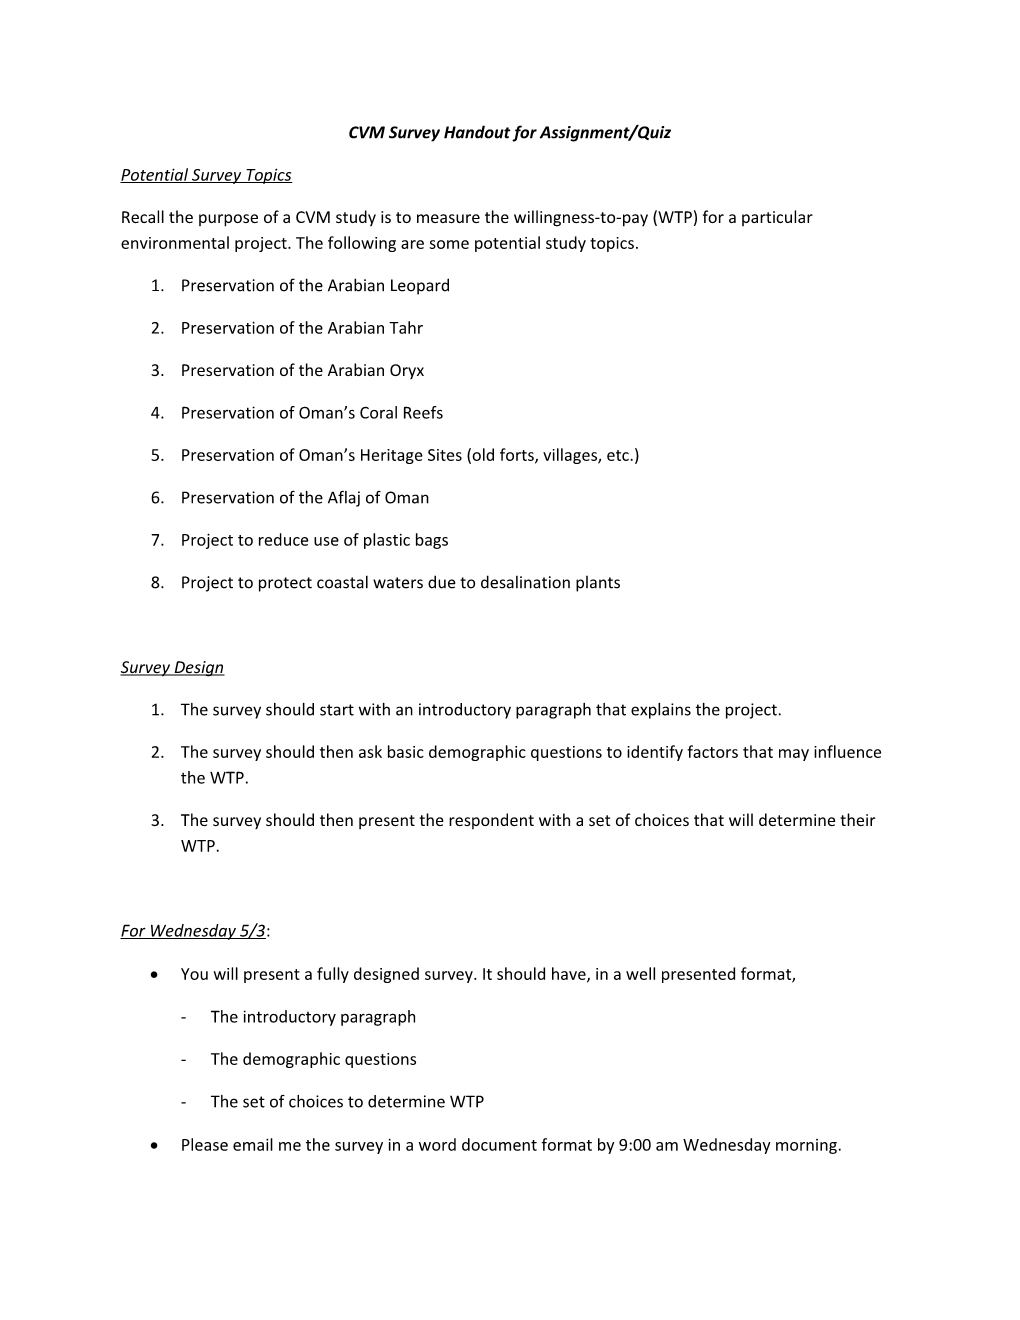 CVM Survey Handout for Assignment /Quiz